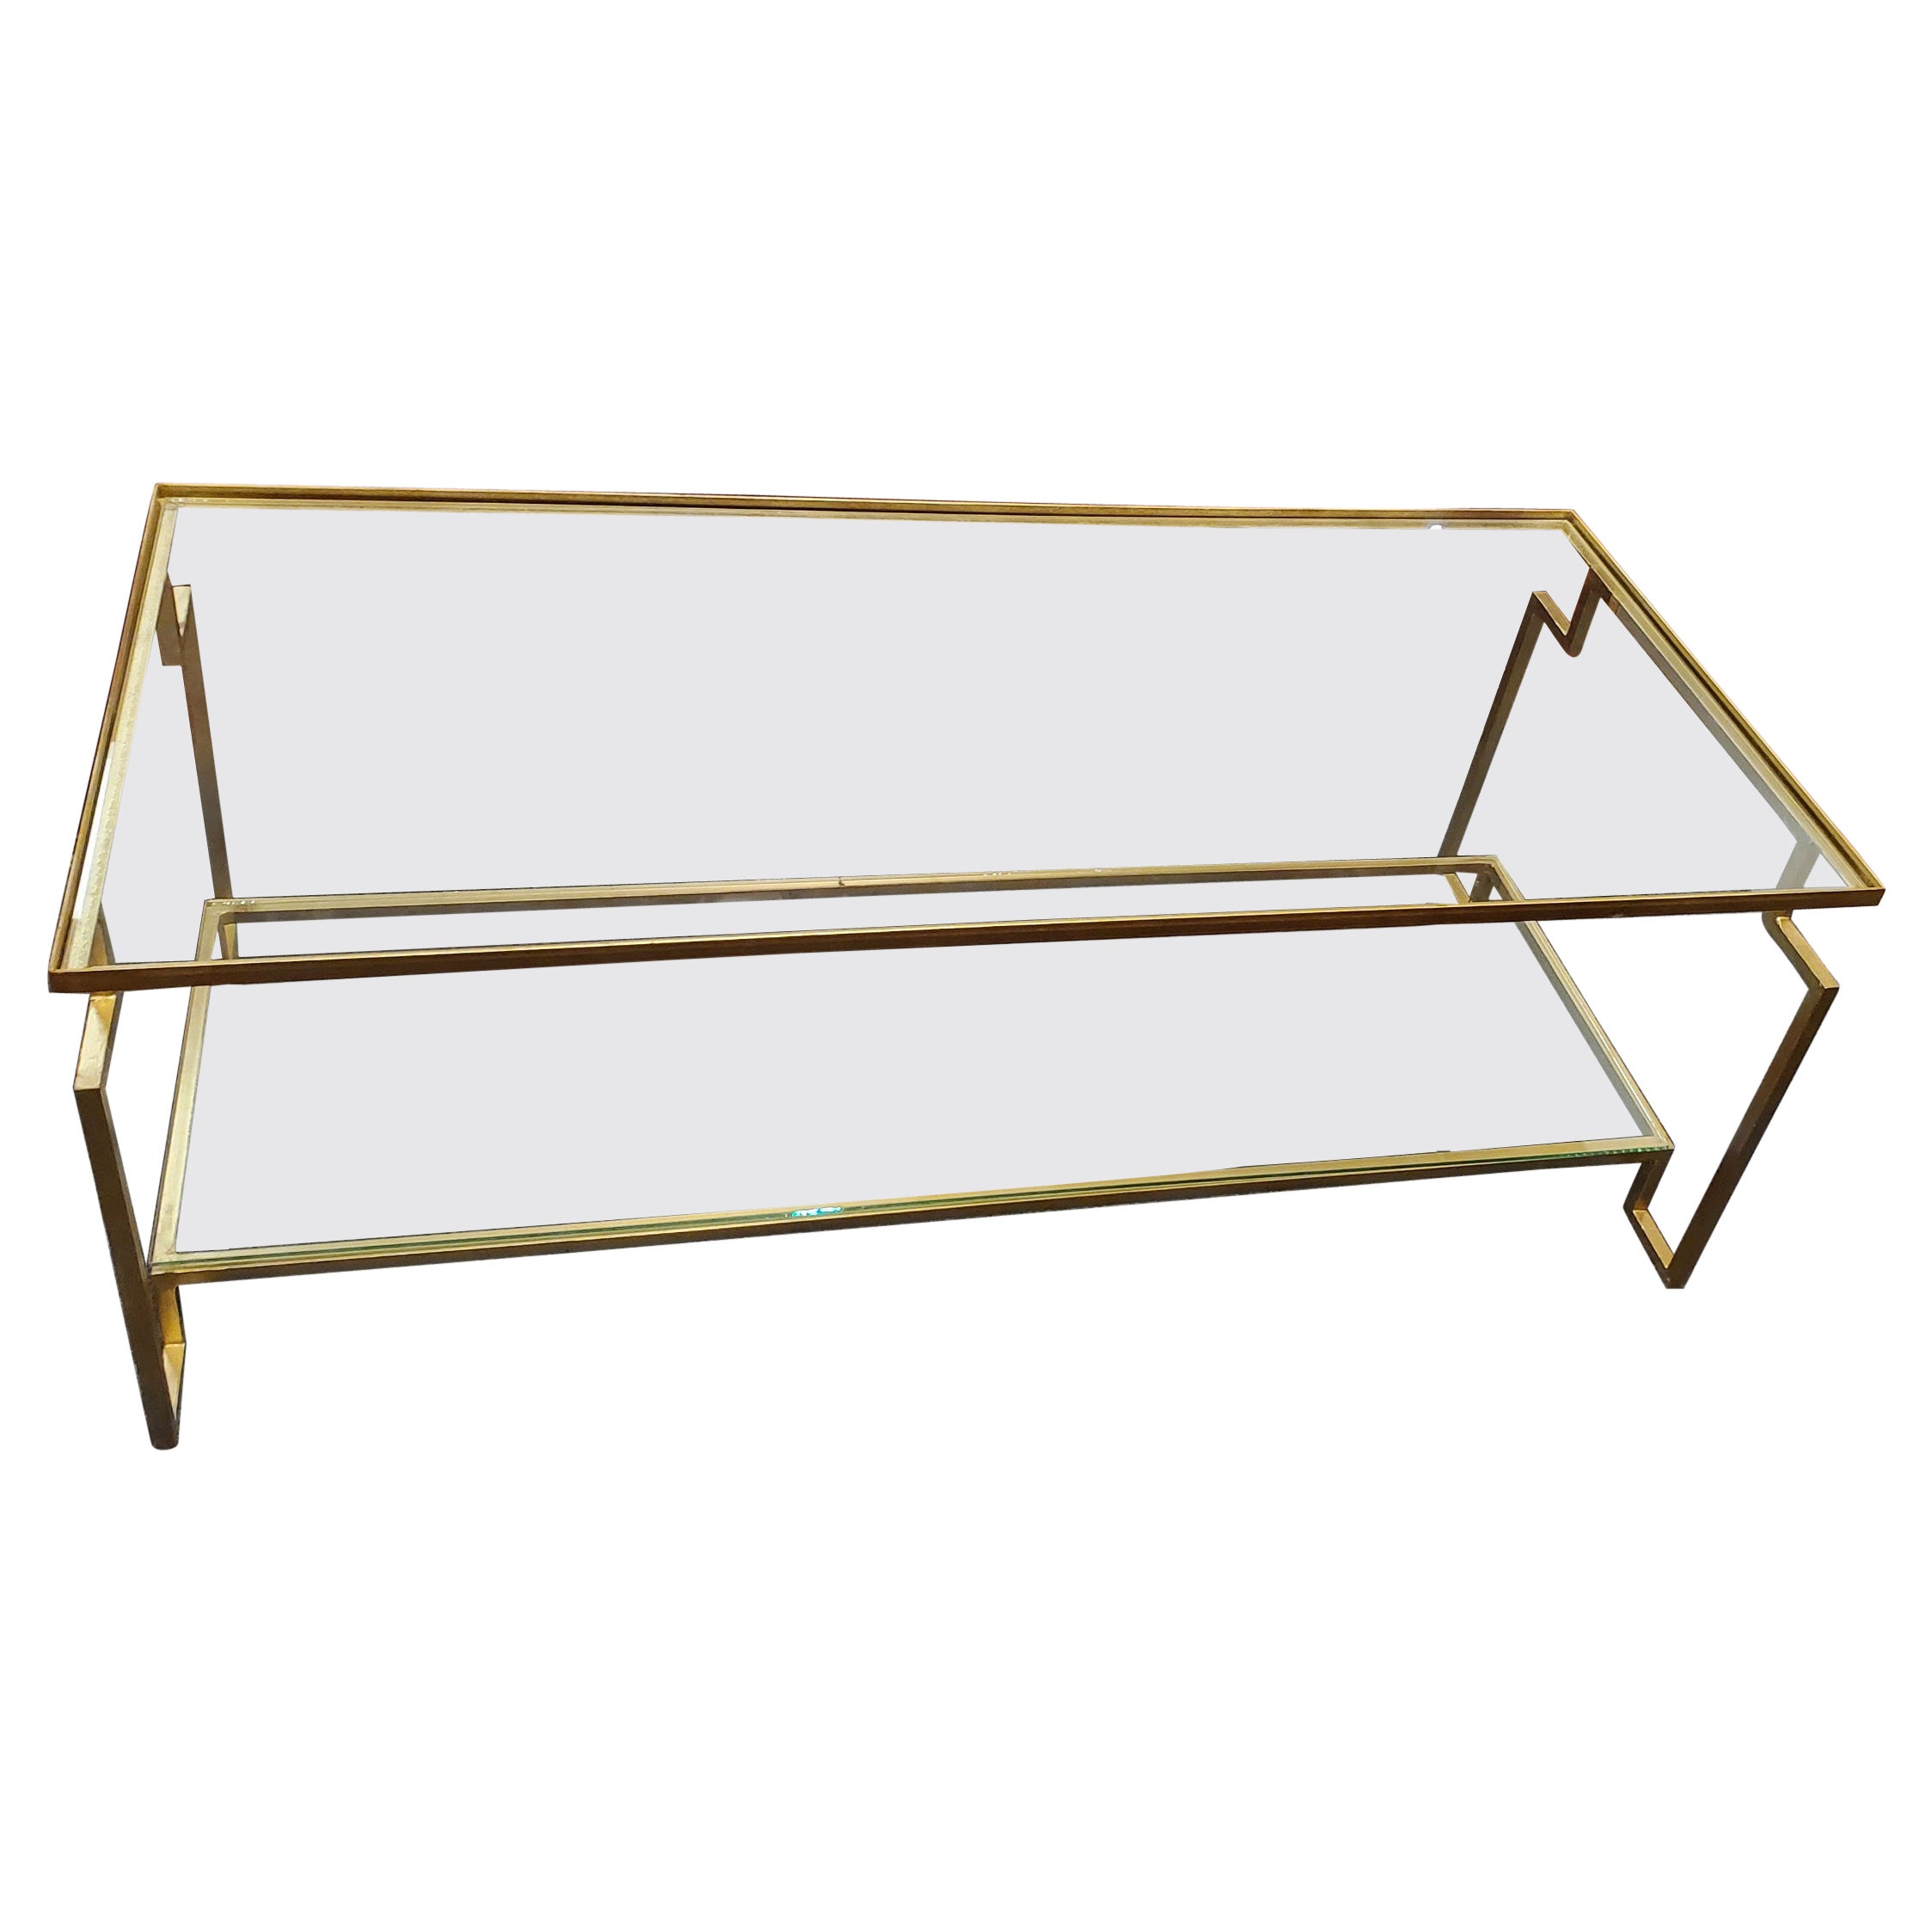 Table basse en métal doré de style post-moderne Apollo avec plateau en verre et étagère inférieure